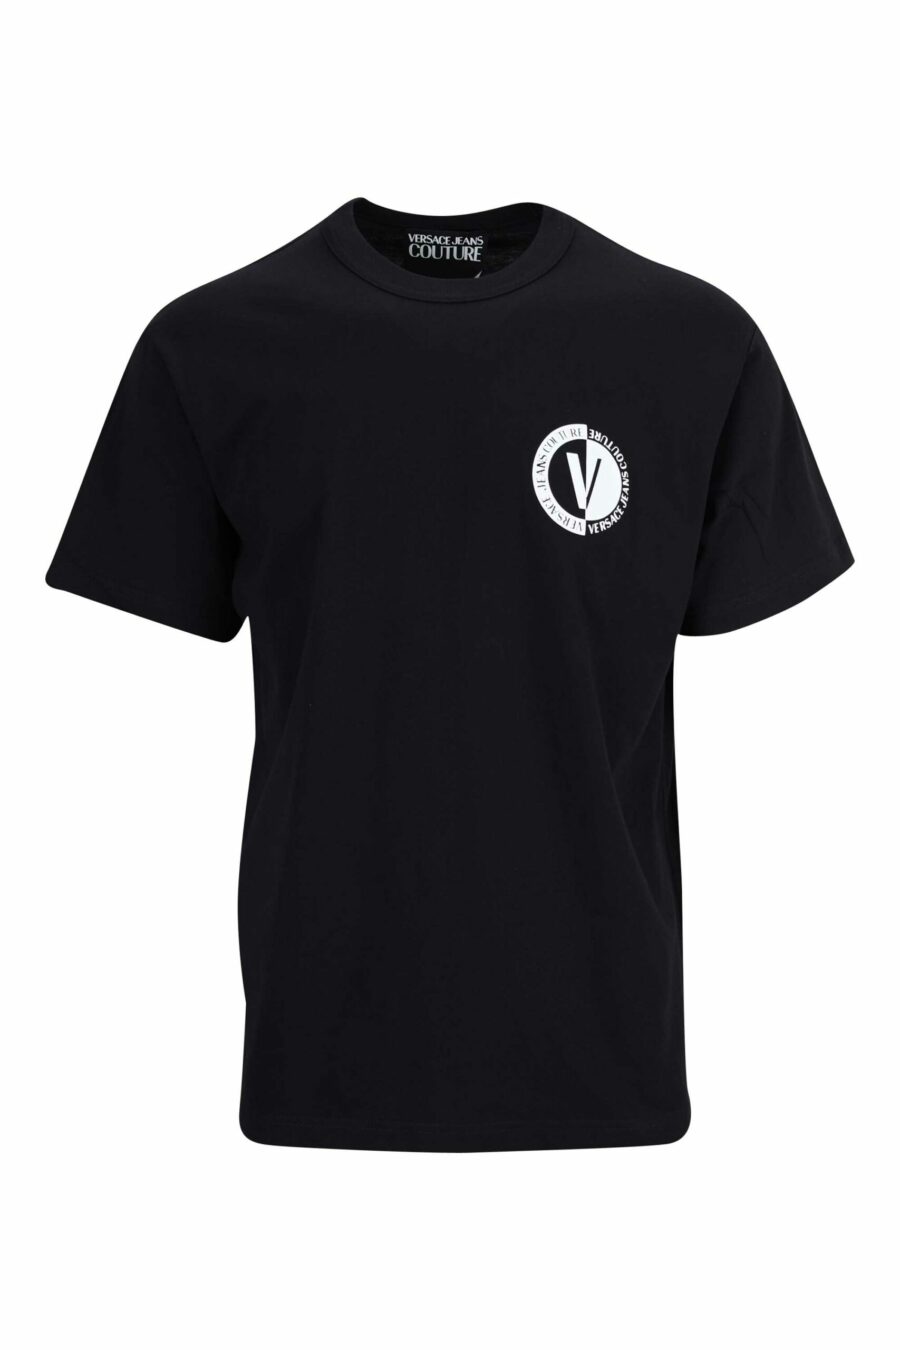 Camiseta negra con minilogo circular en contraste - 8052019471700 scaled